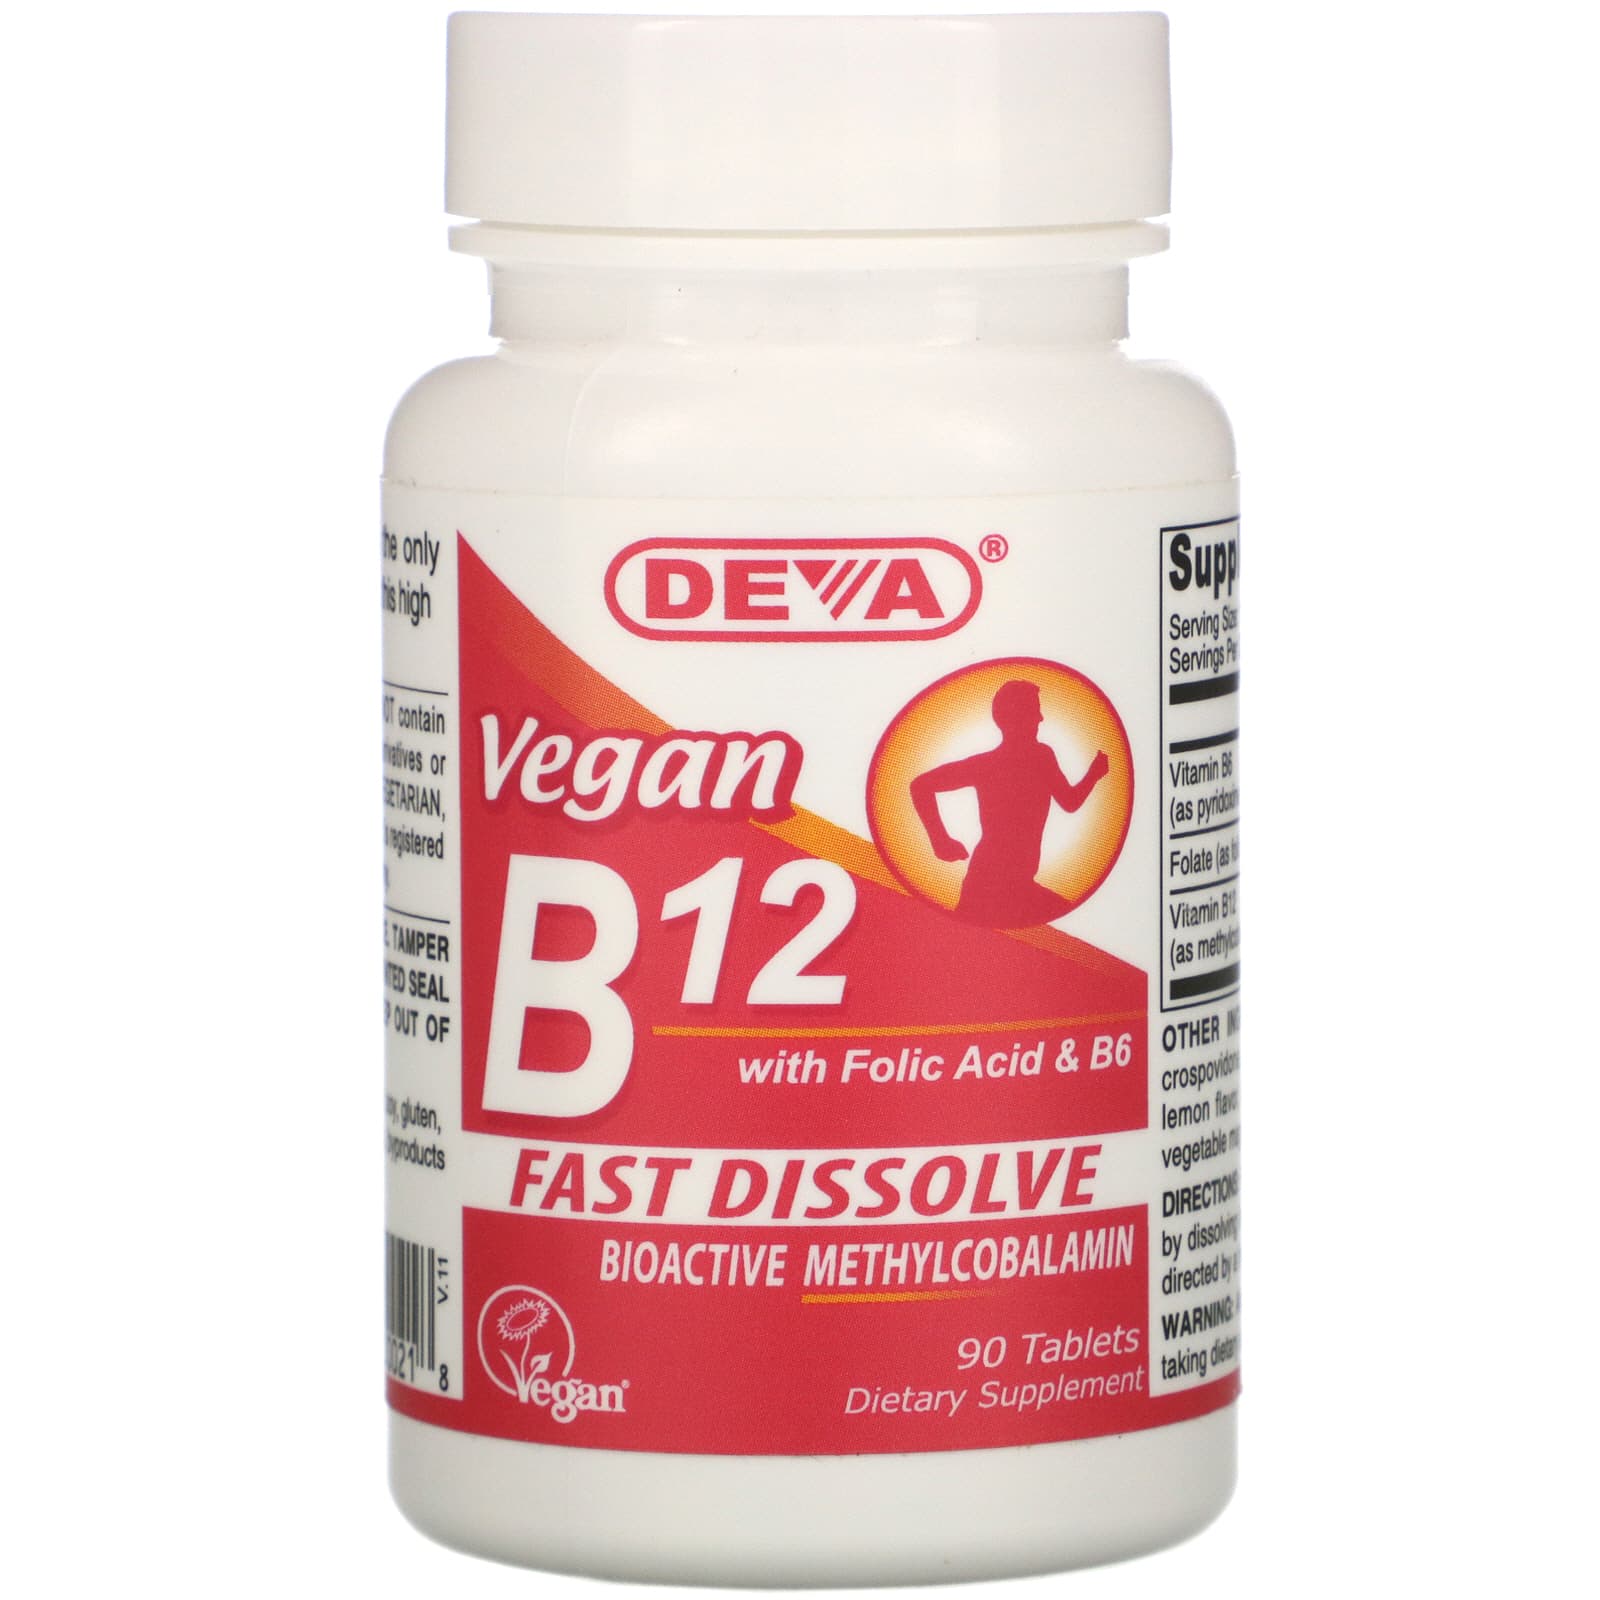 Фолиевая цианокобаламин. Метилкобаламин витамин в12. Deva, Vegan b12 with folic acid & b6, fast-dissolve, 90 Tablets. Витамин b12 препараты. Витамин b12 в таблетках.